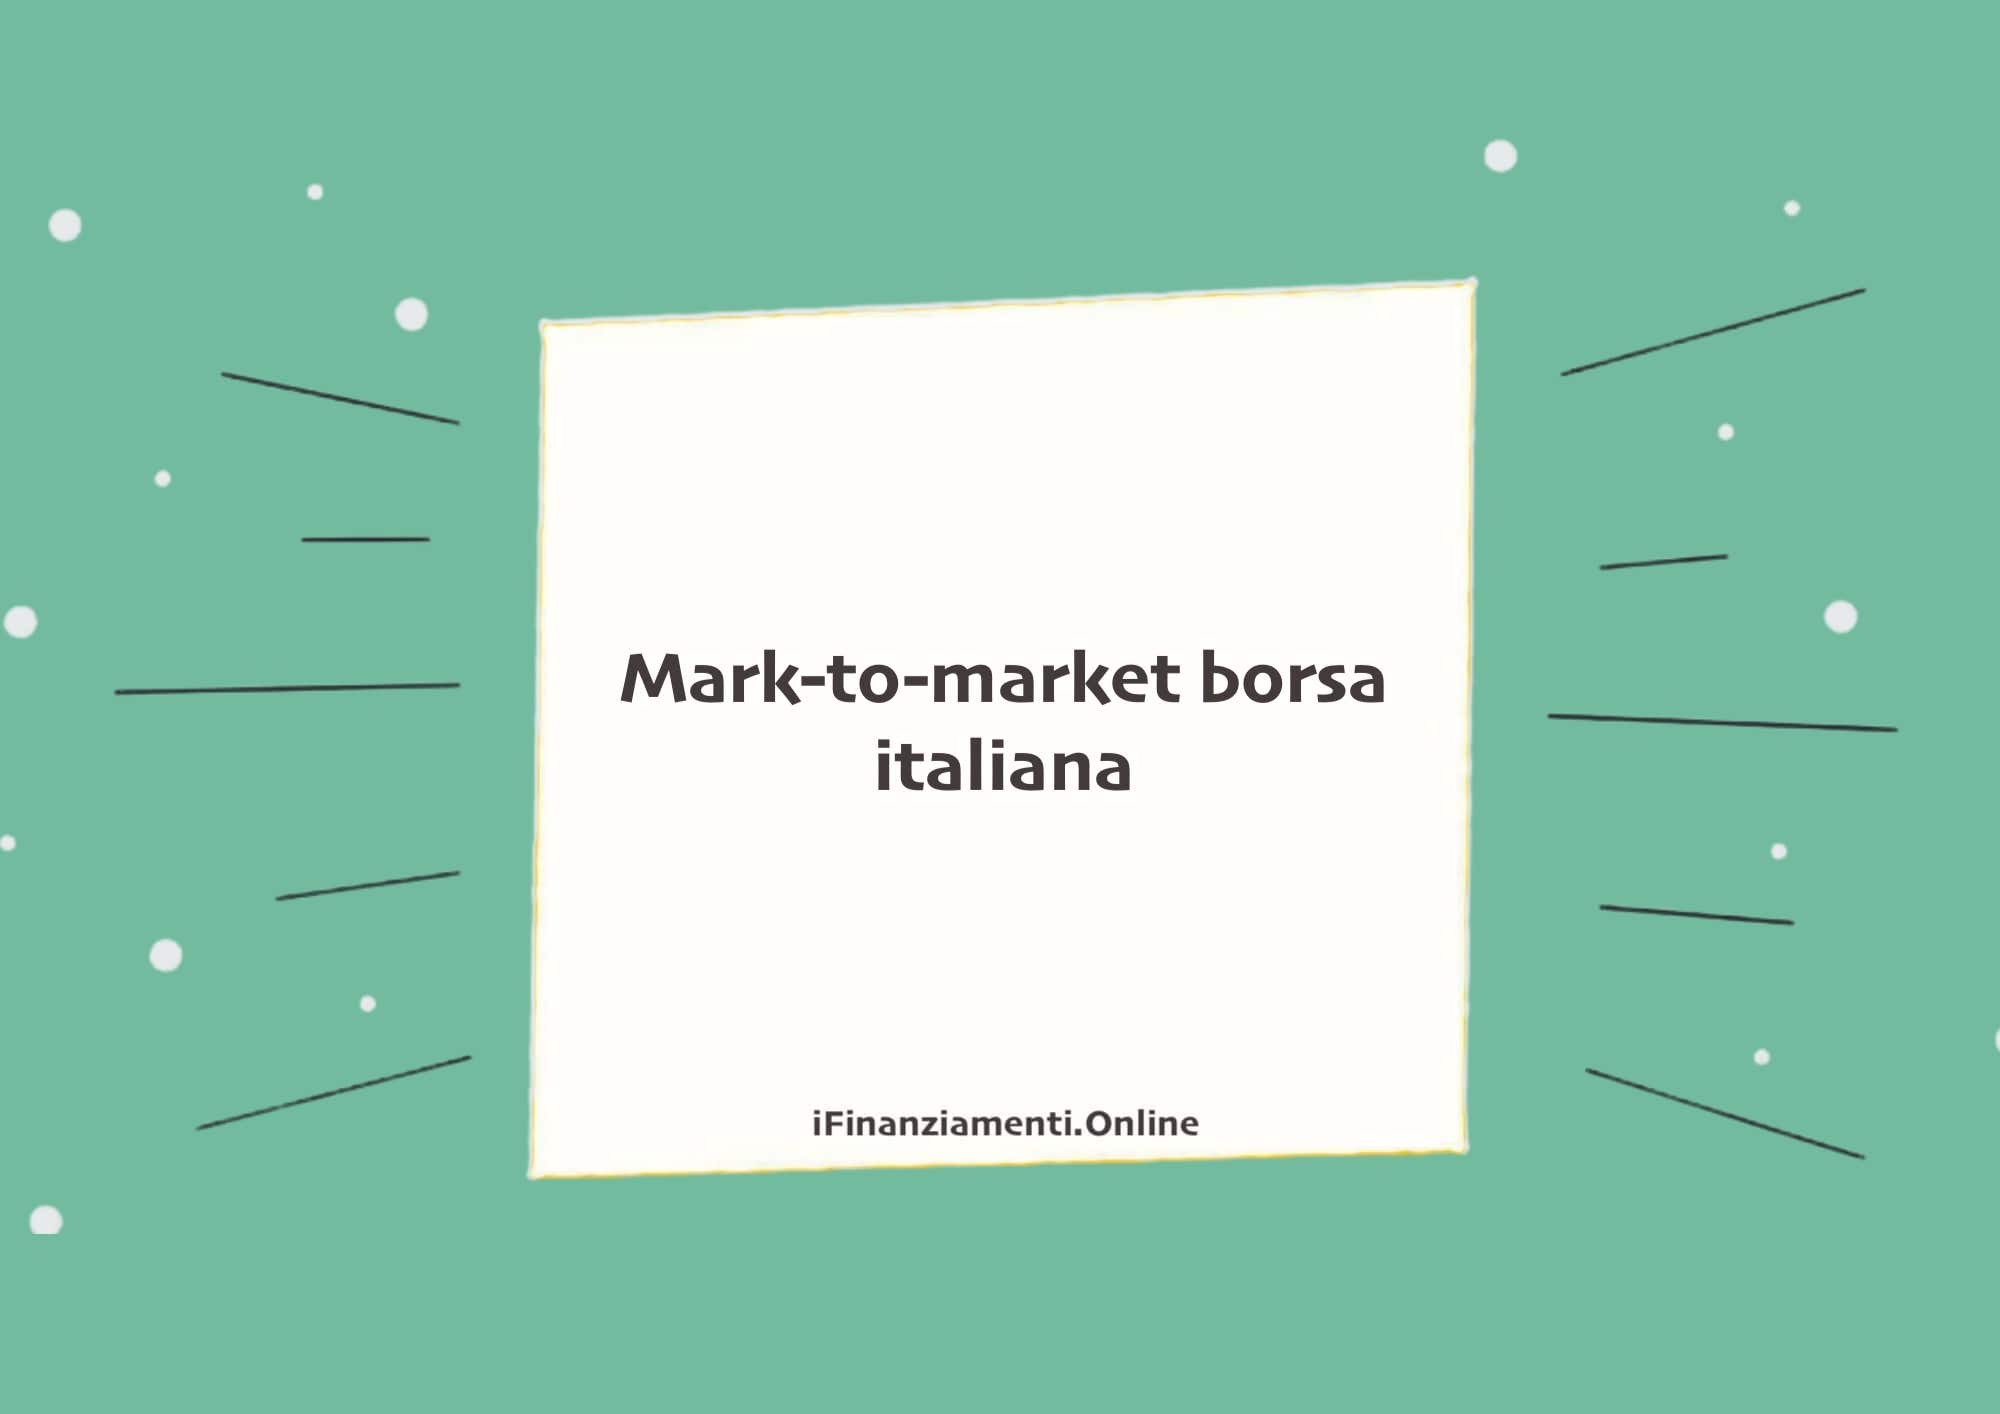 Mark-to-market borsa italiana